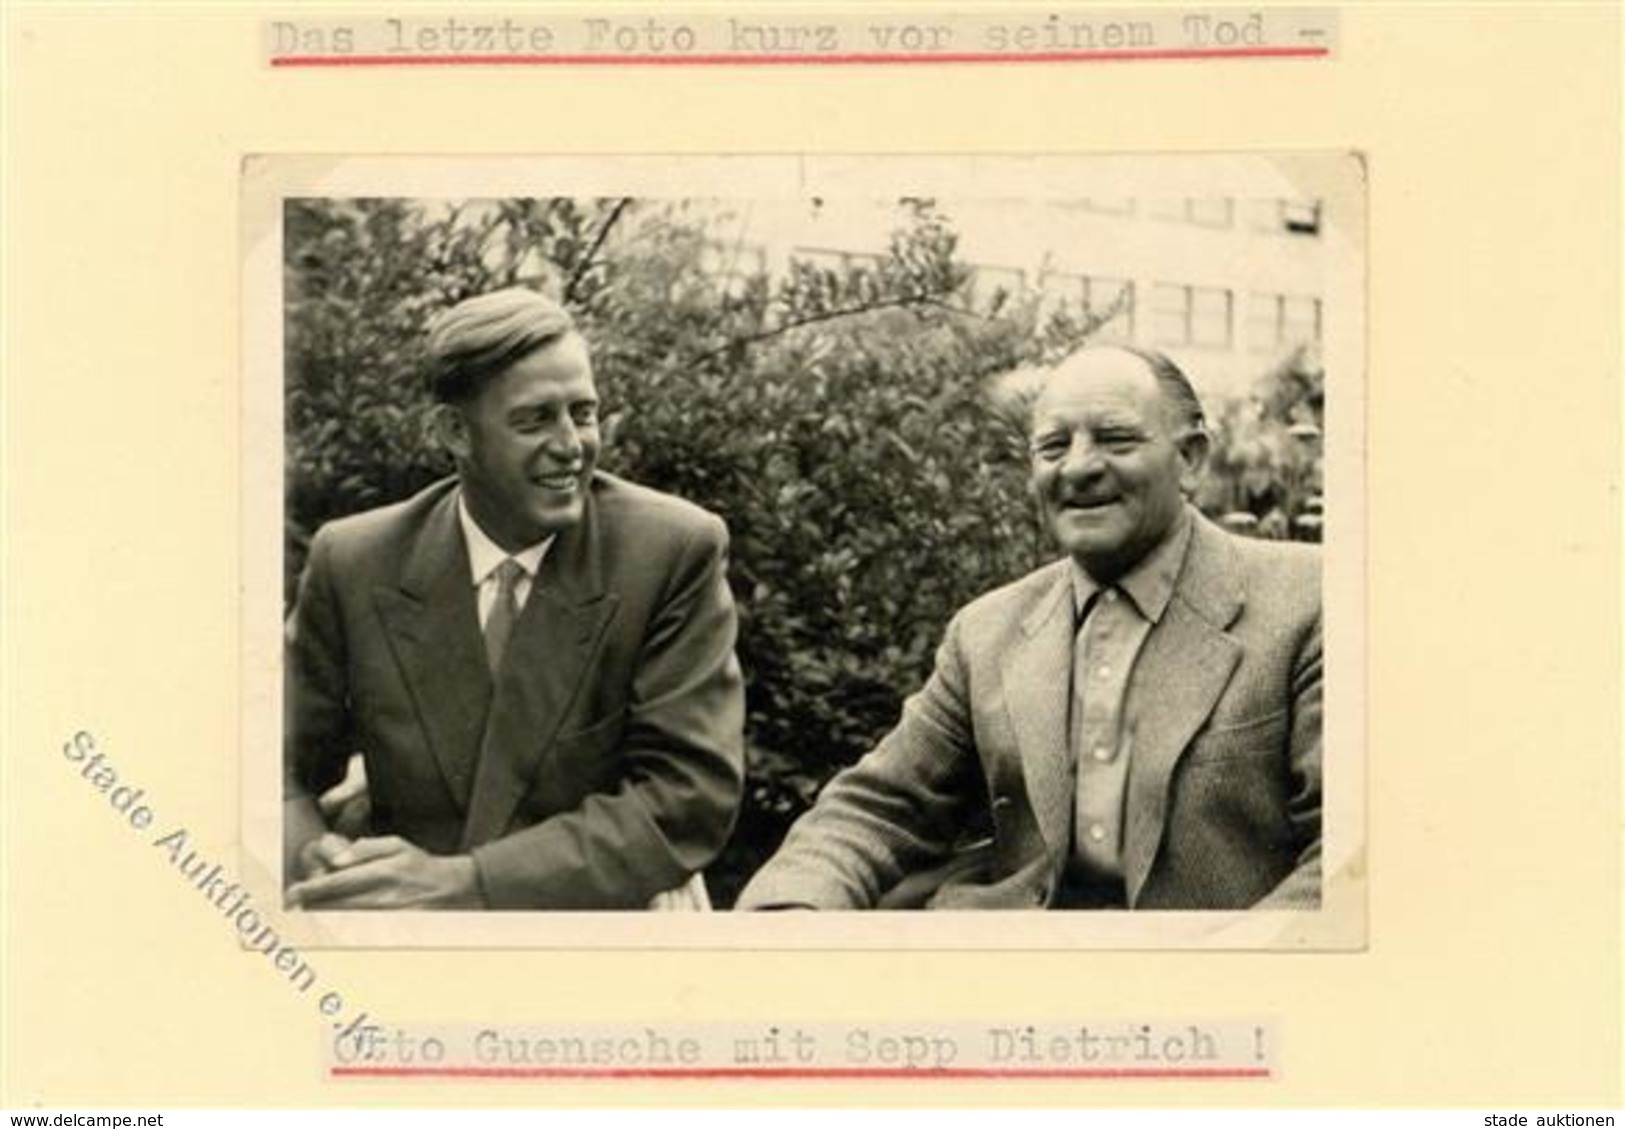 SS WK II - Foto -das Letzte Foto Kurz Vor Seinem Tod - Otto GÜSCHE Mit Sepp DIETRICH I - Weltkrieg 1939-45